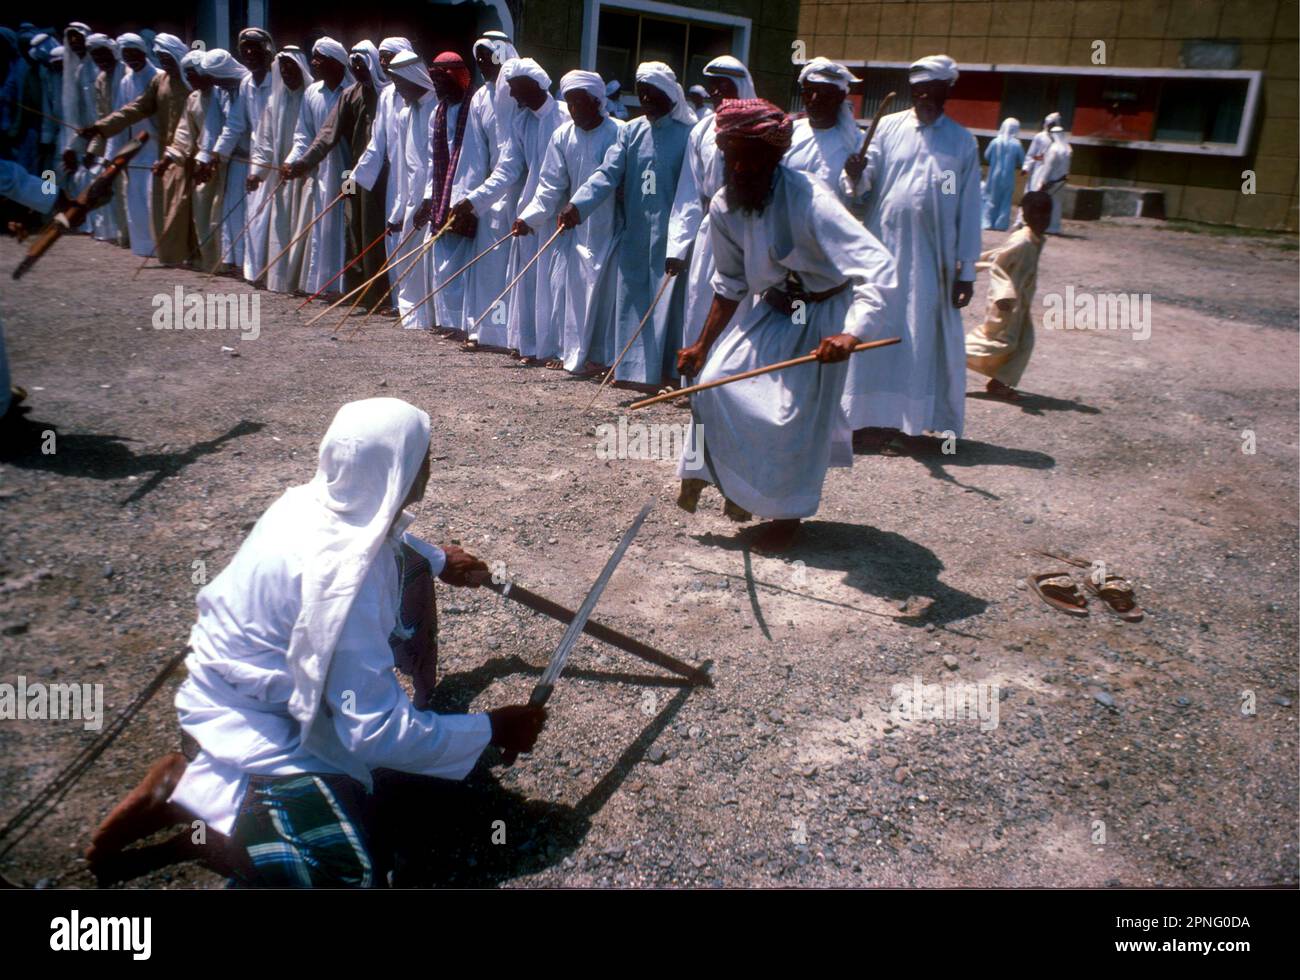 Arabische Stammesangehörige tanzen vor dem Herrscherpalast in Fujairah, um das erste Hotel, das Hilton, im Jahr 1978 zu feiern Stockfoto